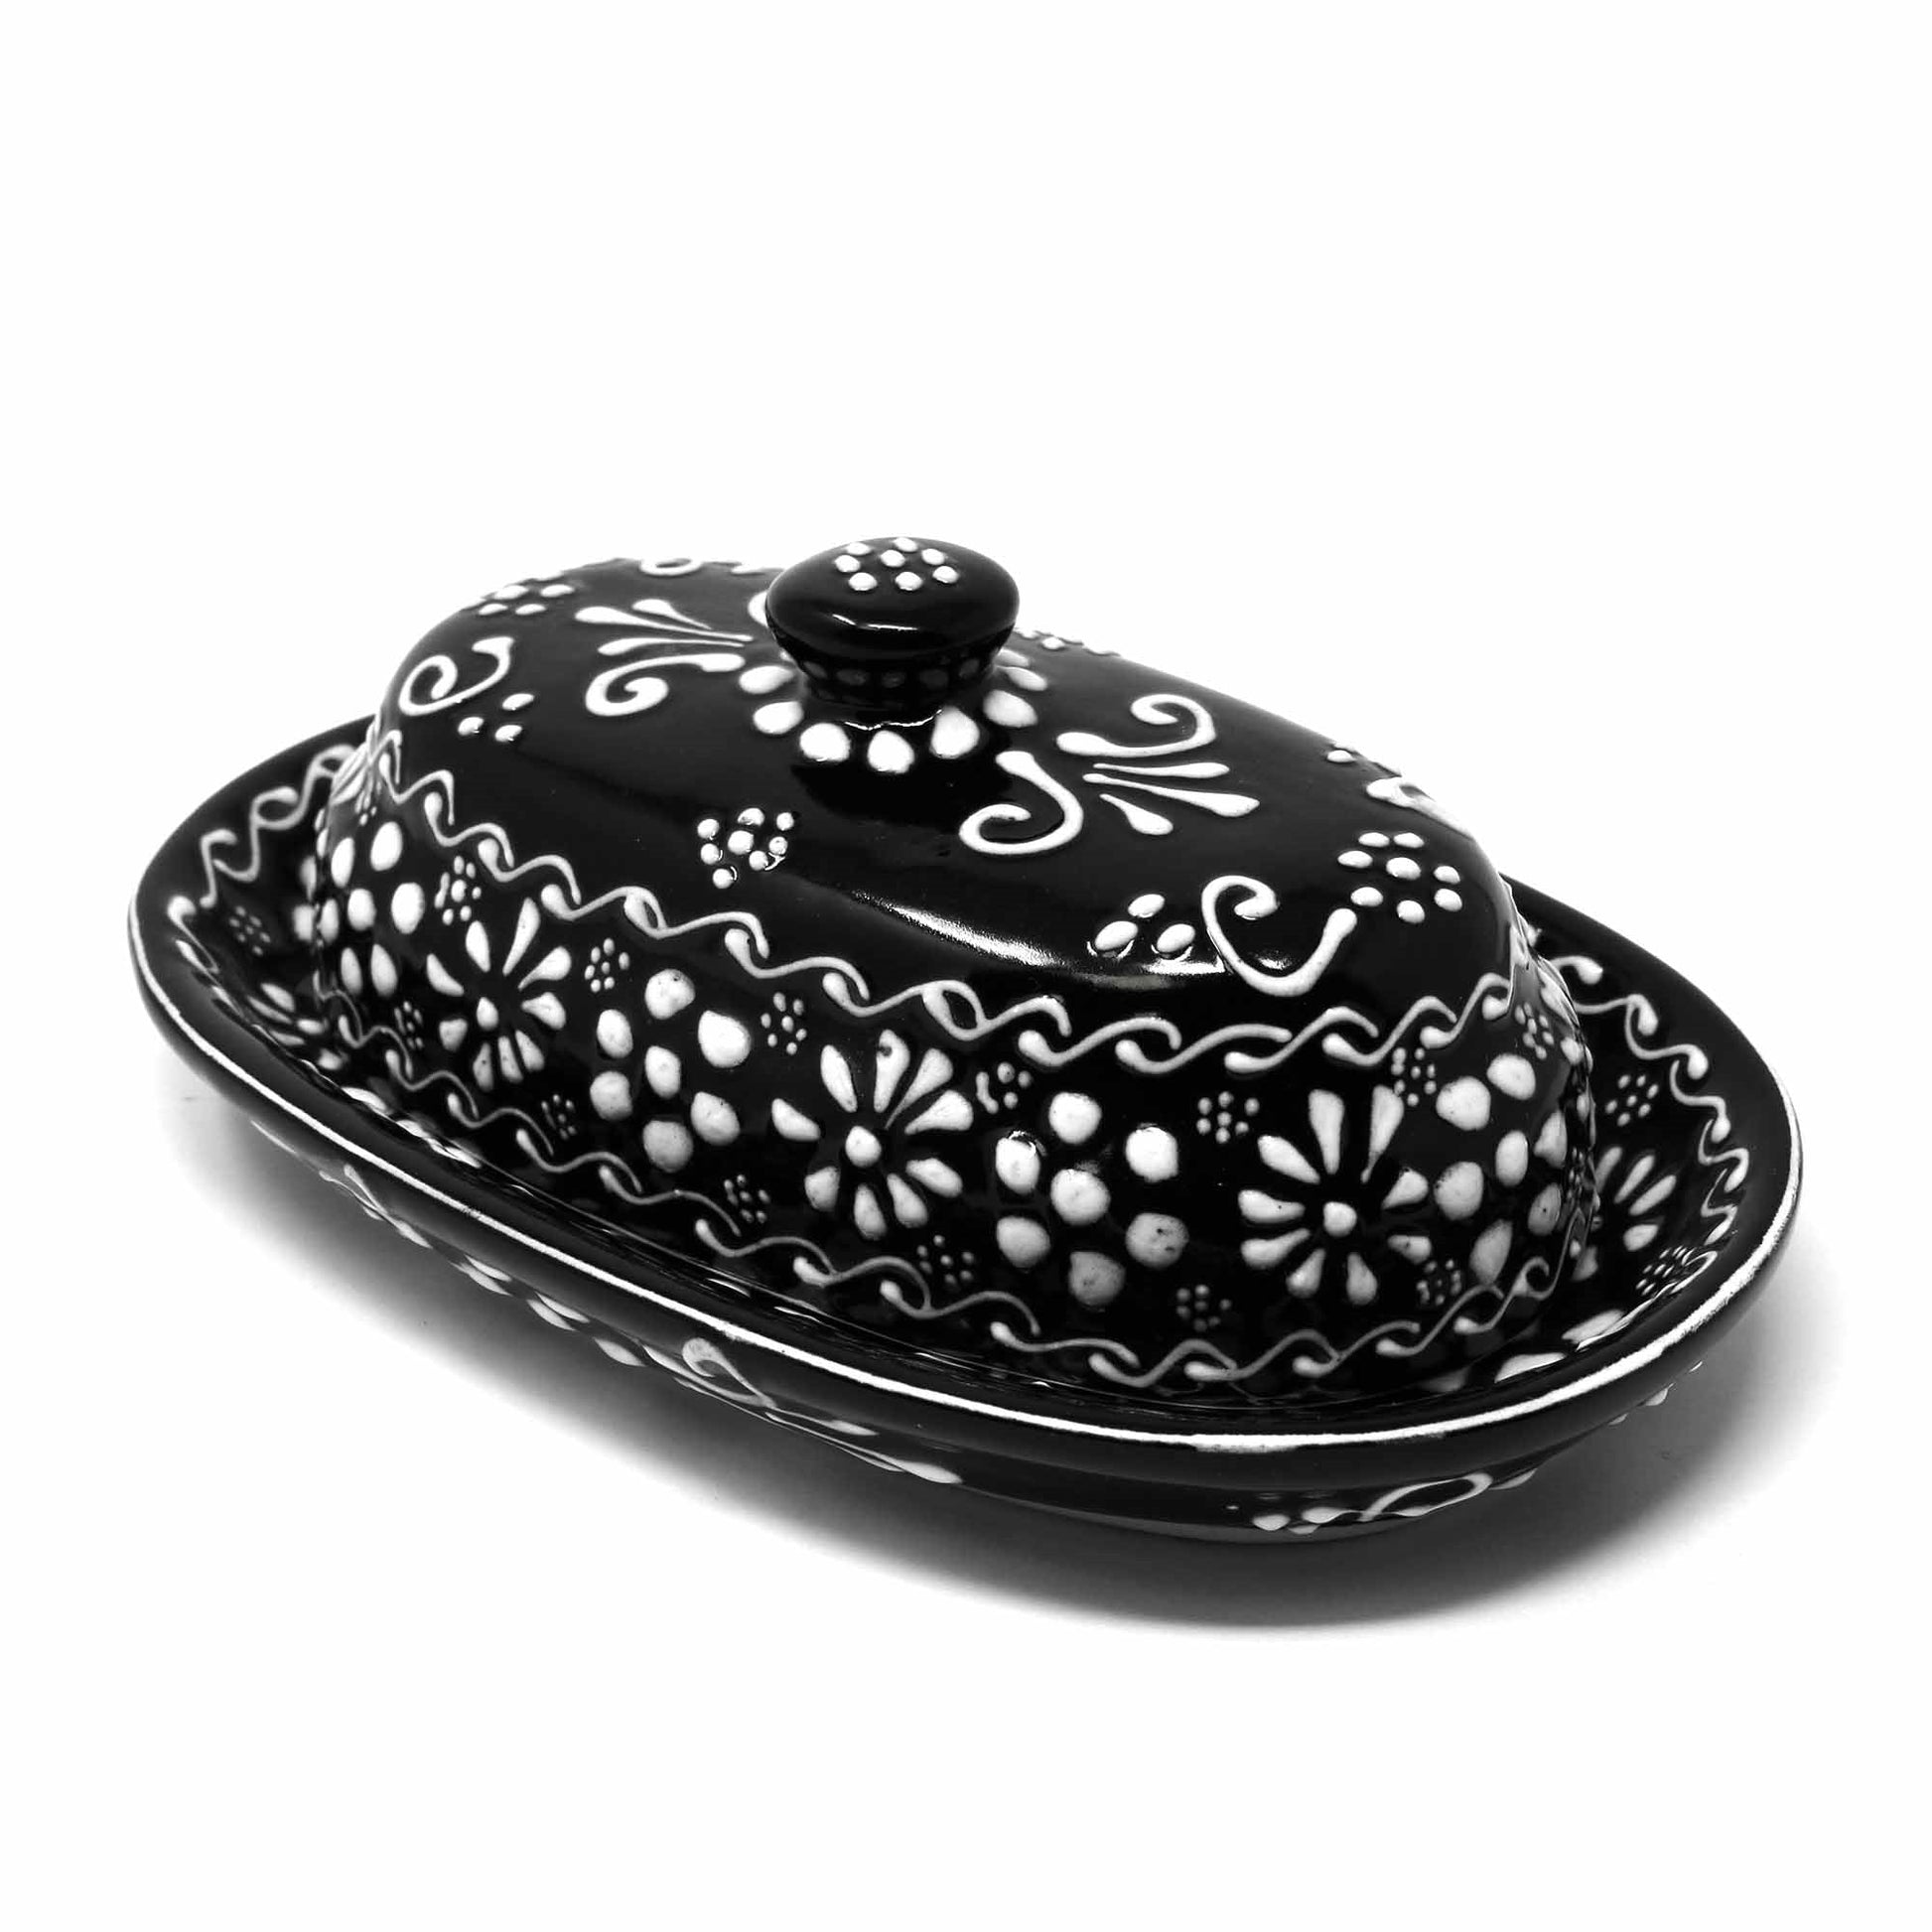 Encantada Handmade Pottery Butter Dish, Black & White - Recetas Fair Trade